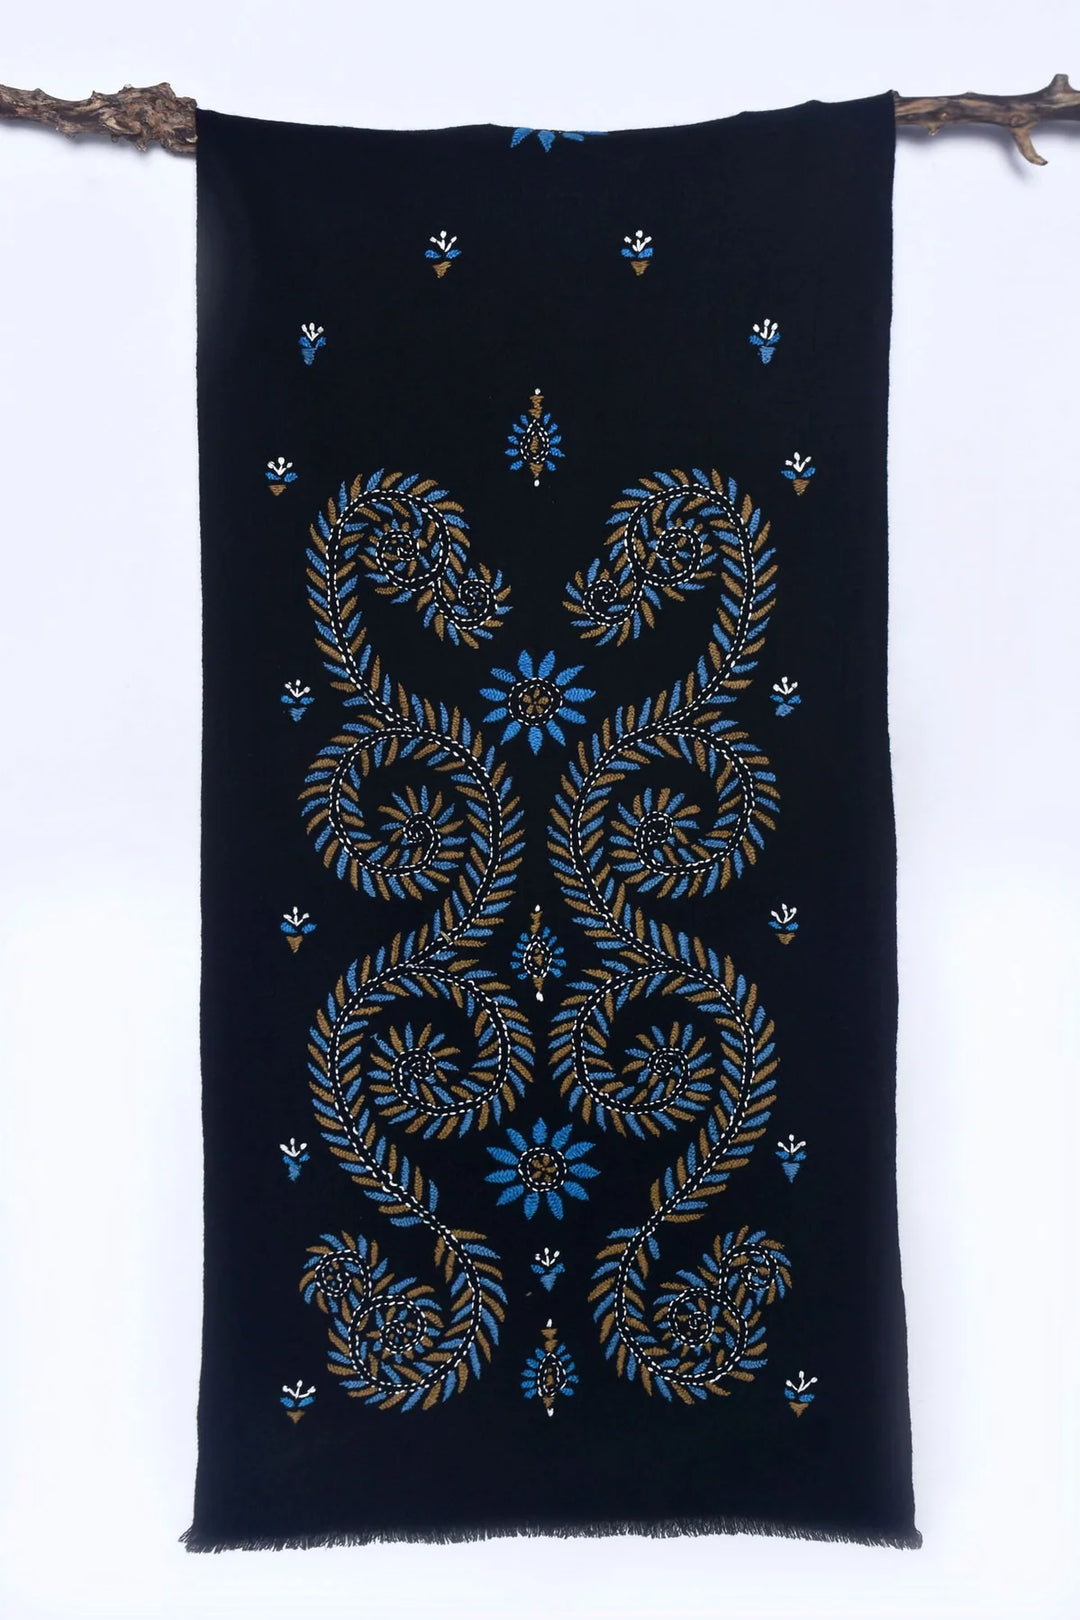 Black Cashmere Stole - Elegant & Versatile | Puma Handwoven Soft Cashmere Stole - Black